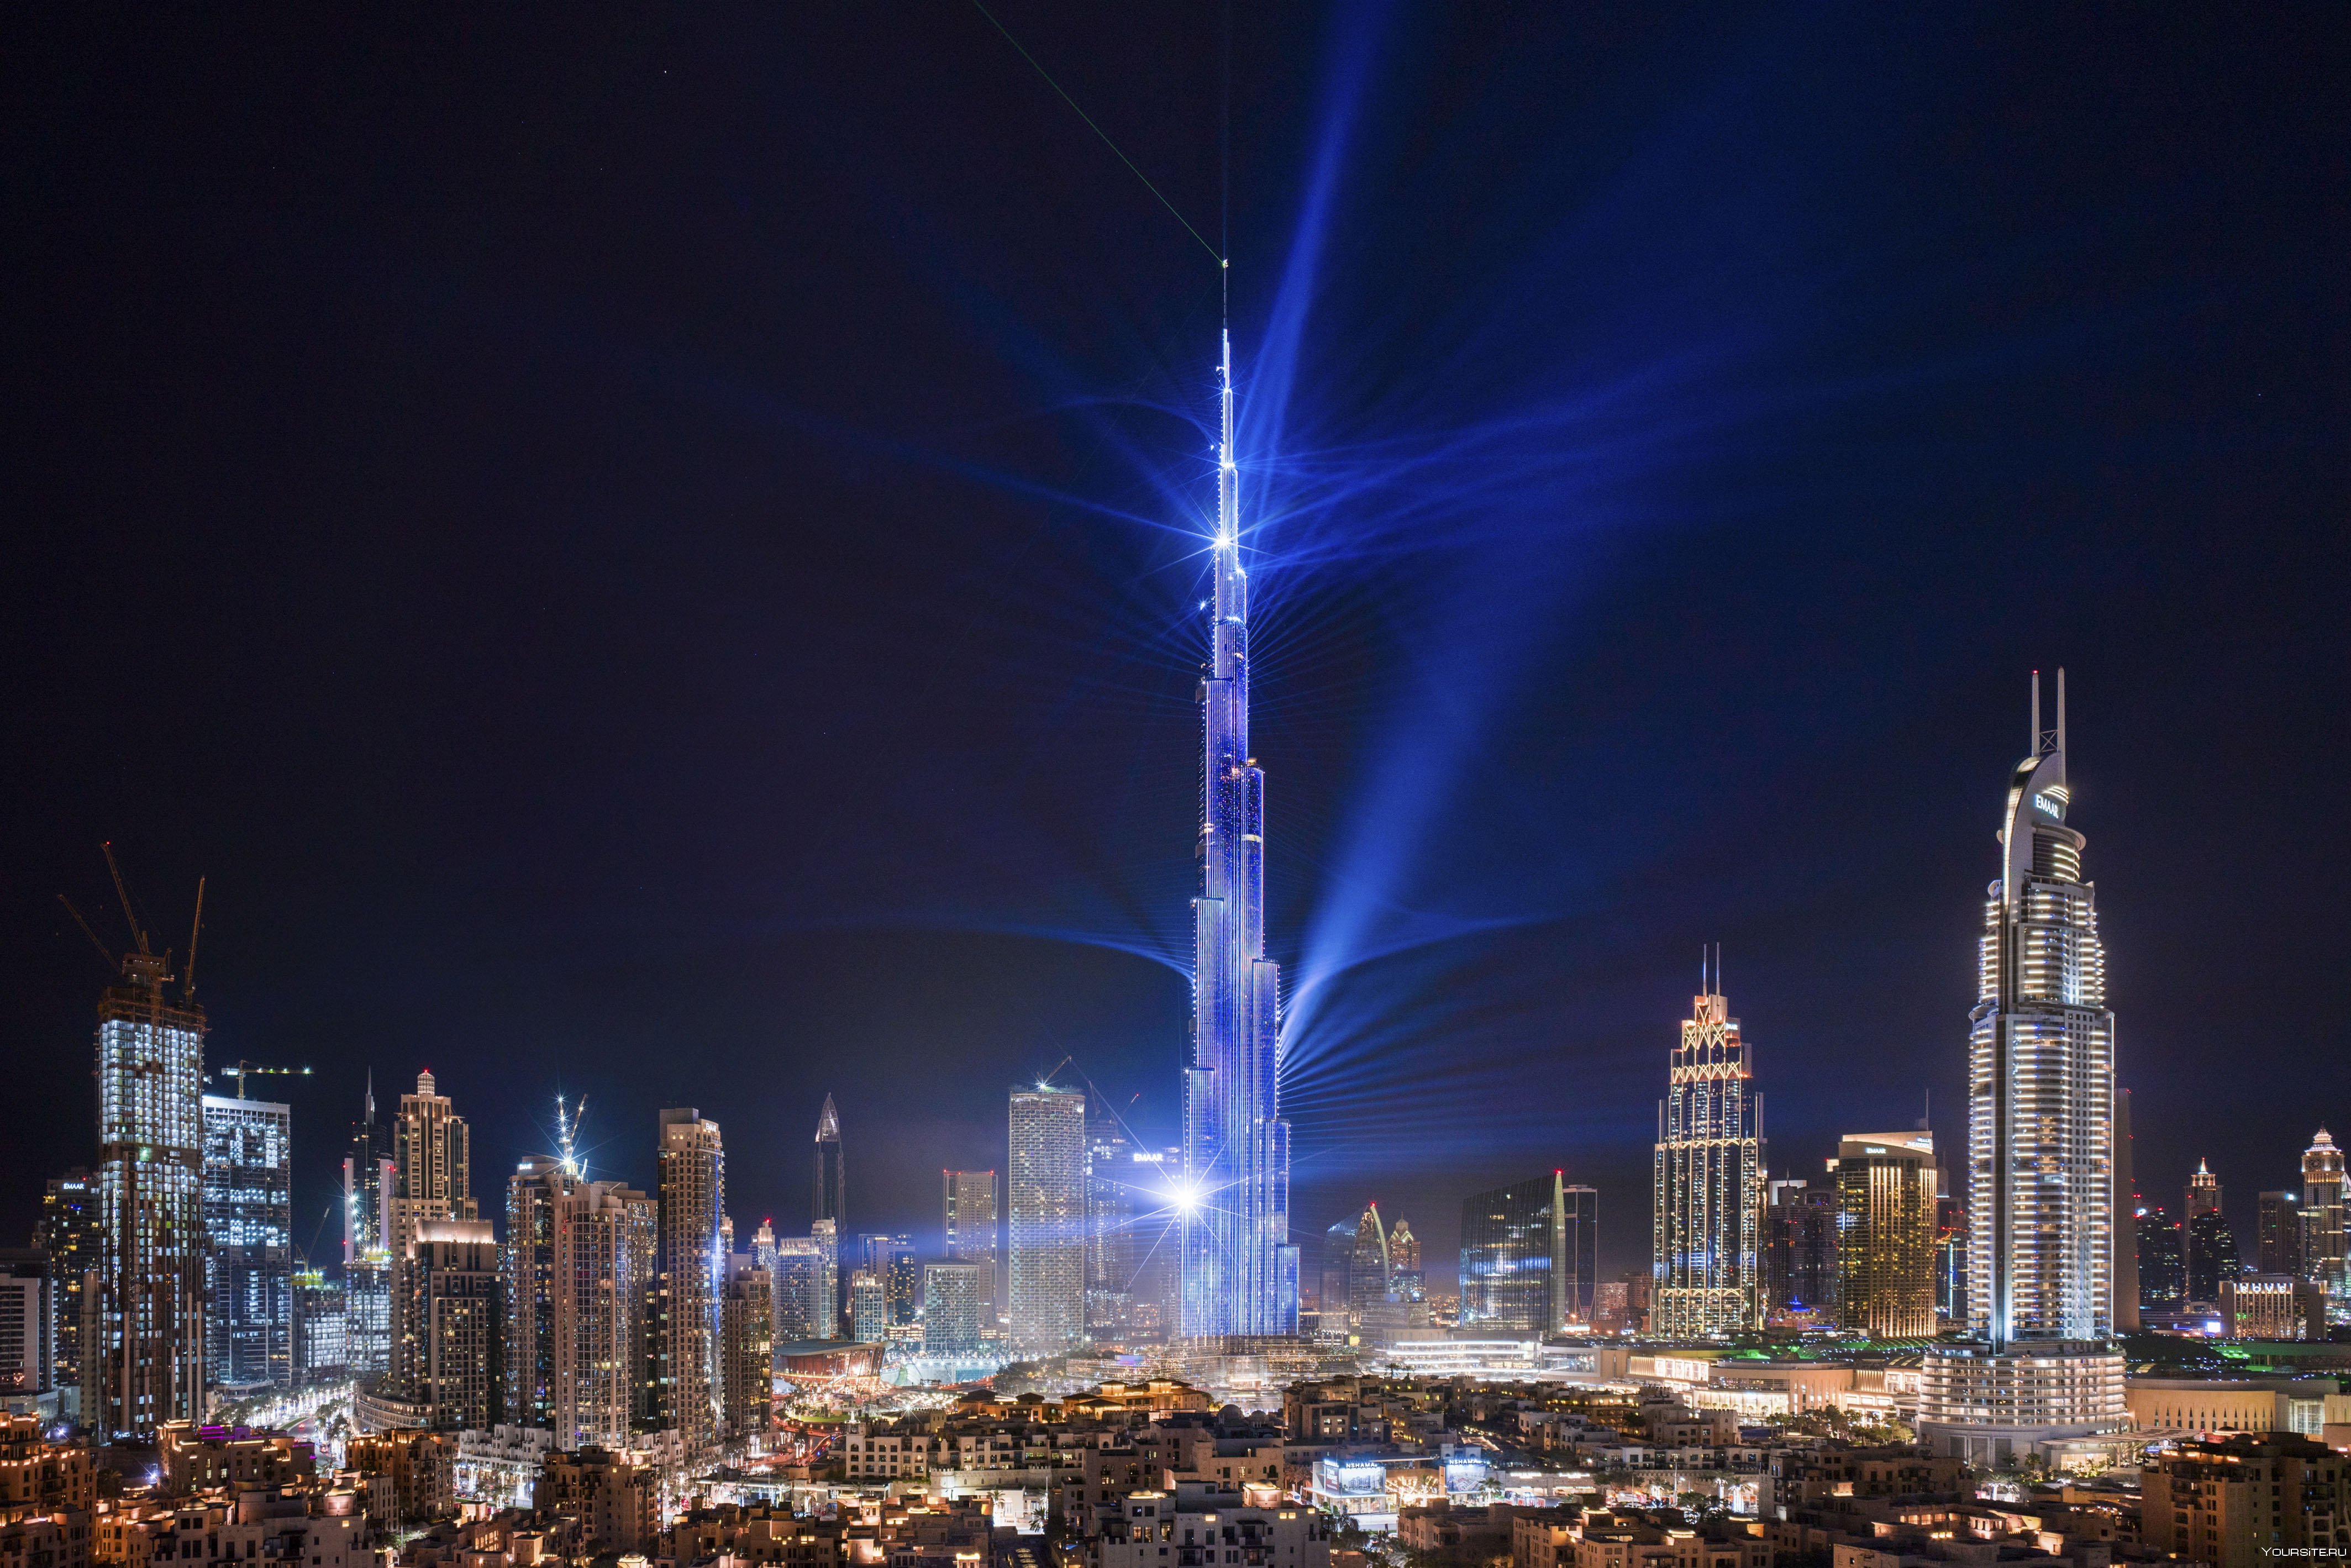 Бурдж халифа сейчас. Бурдж Халифа. Ночной Дубай Бурдж Халифа. Дубай Бурдж Халифа ночью. Башня Бурдж Халифа в Дубае ночью.